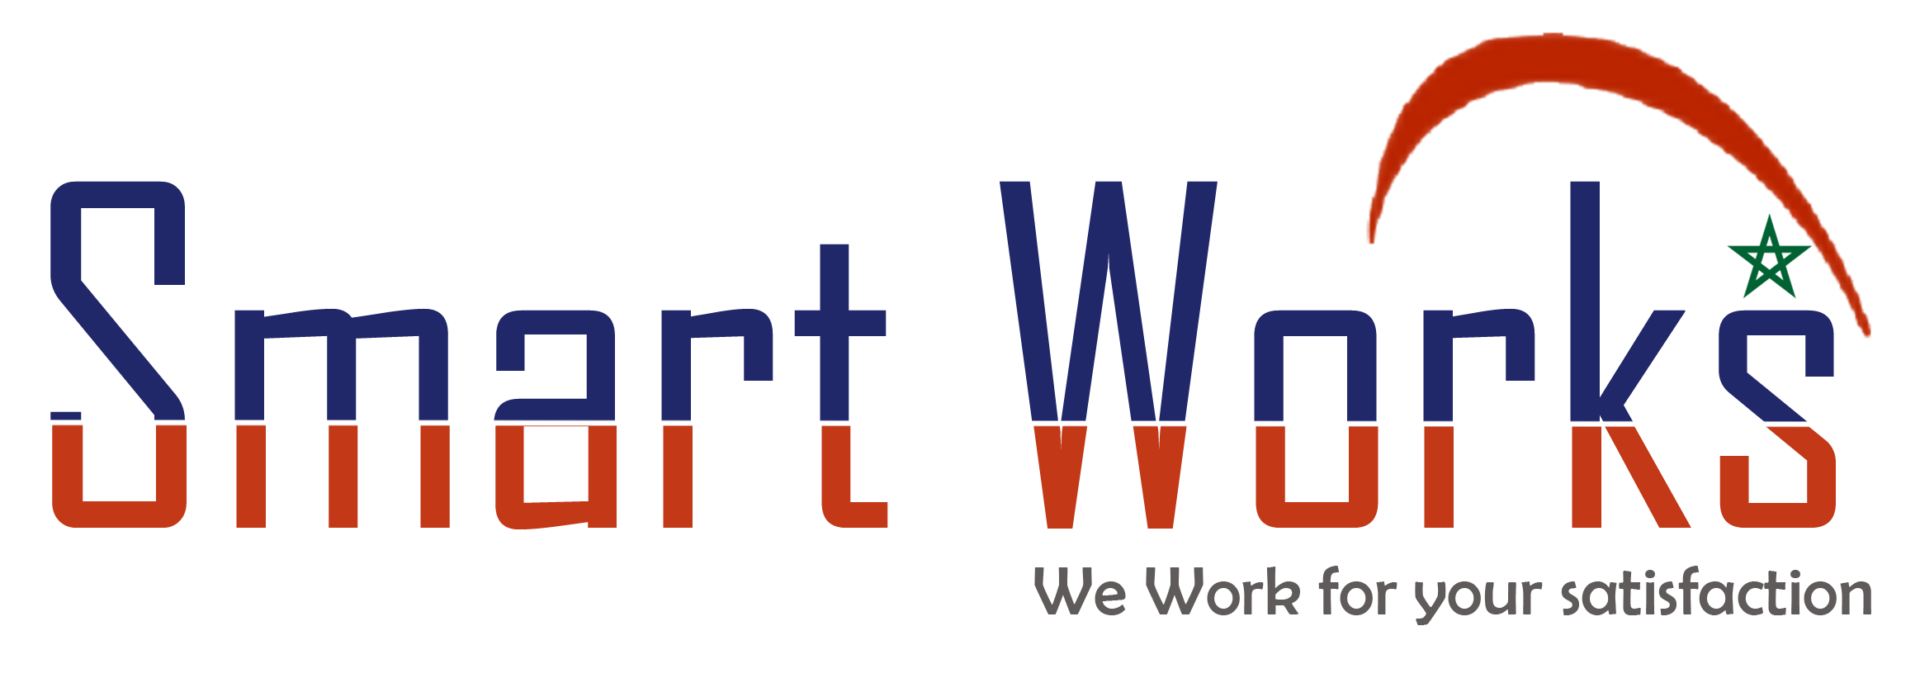 Logo Smart works